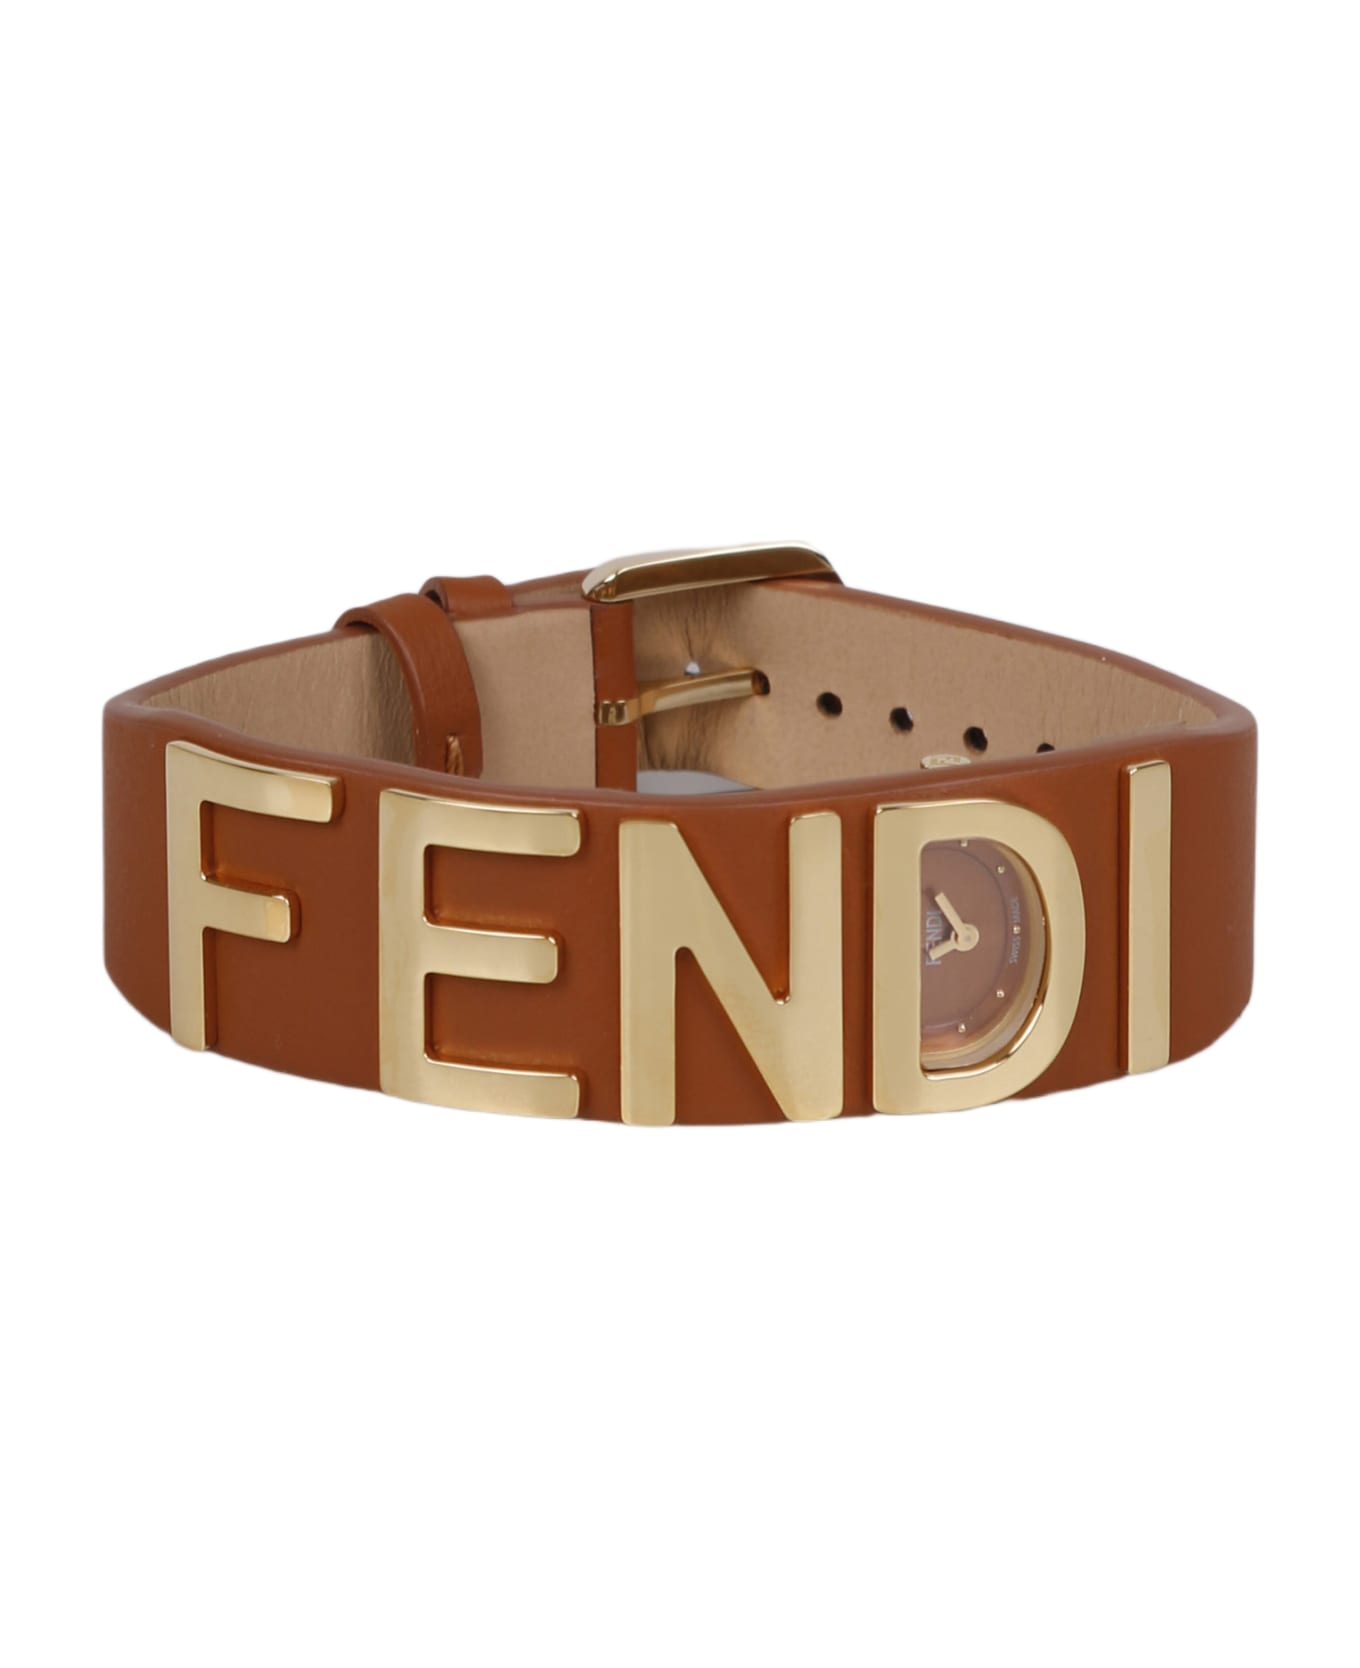 Fendi Bracelet Watch With Fendi Lettering